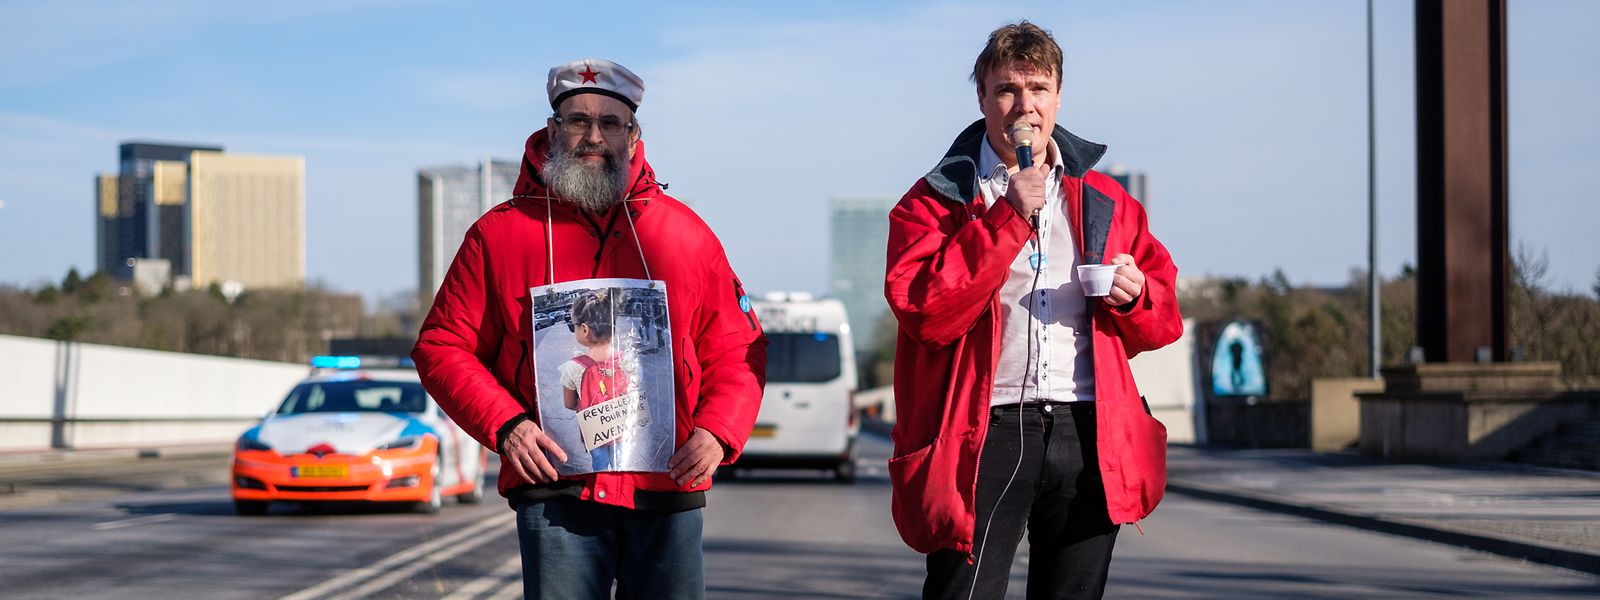 Seit November 2020 organisieren Jean-Marie Jacoby (links) und Peter Freitag wöchentlich Demonstrationen gegen die Corona-Auflagen.